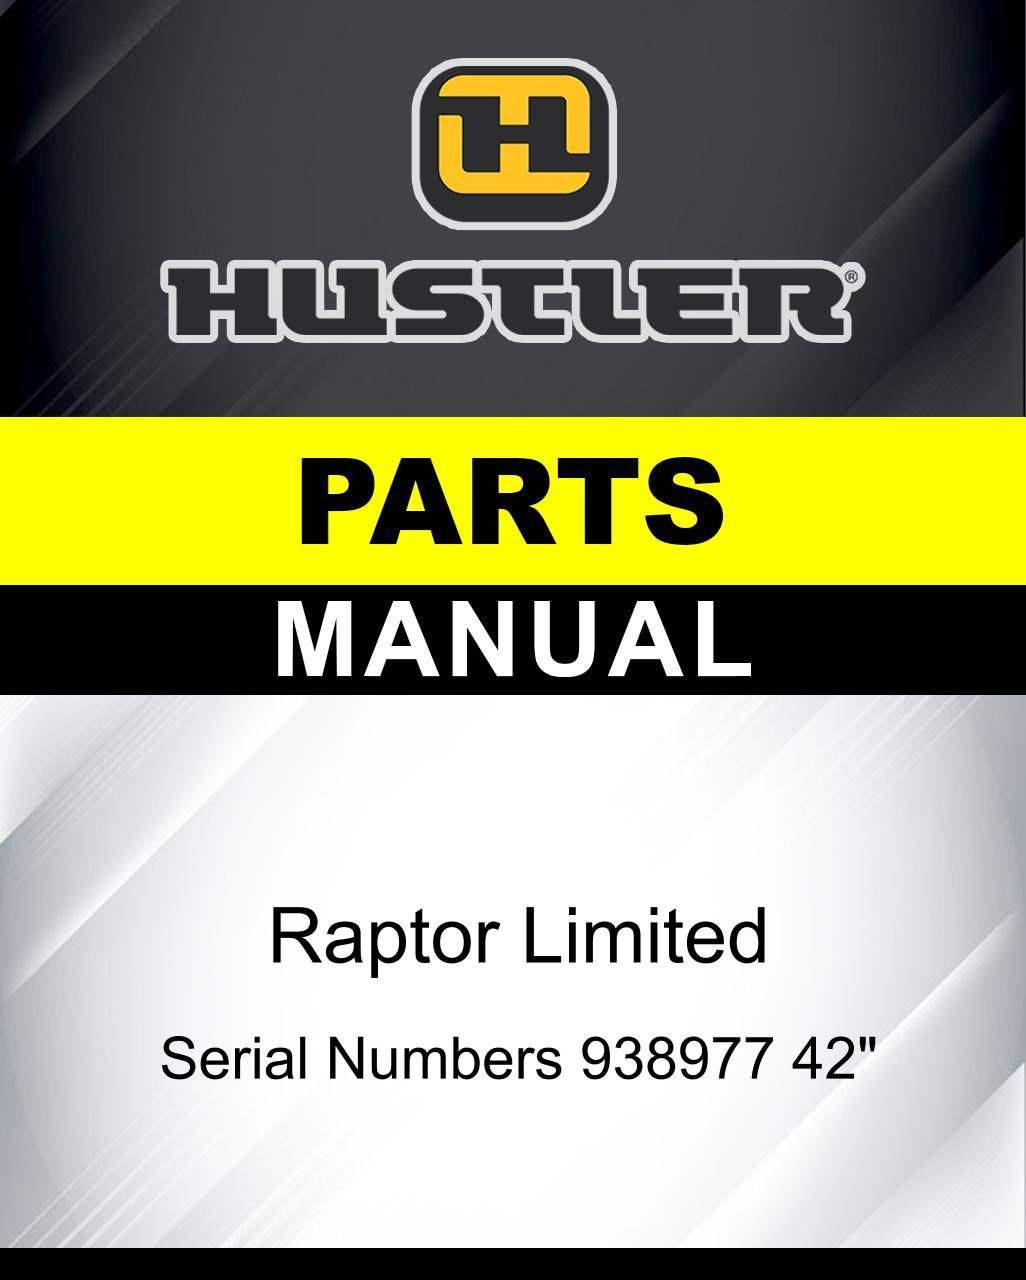 Hustler Raptor Limited SN 938977 42